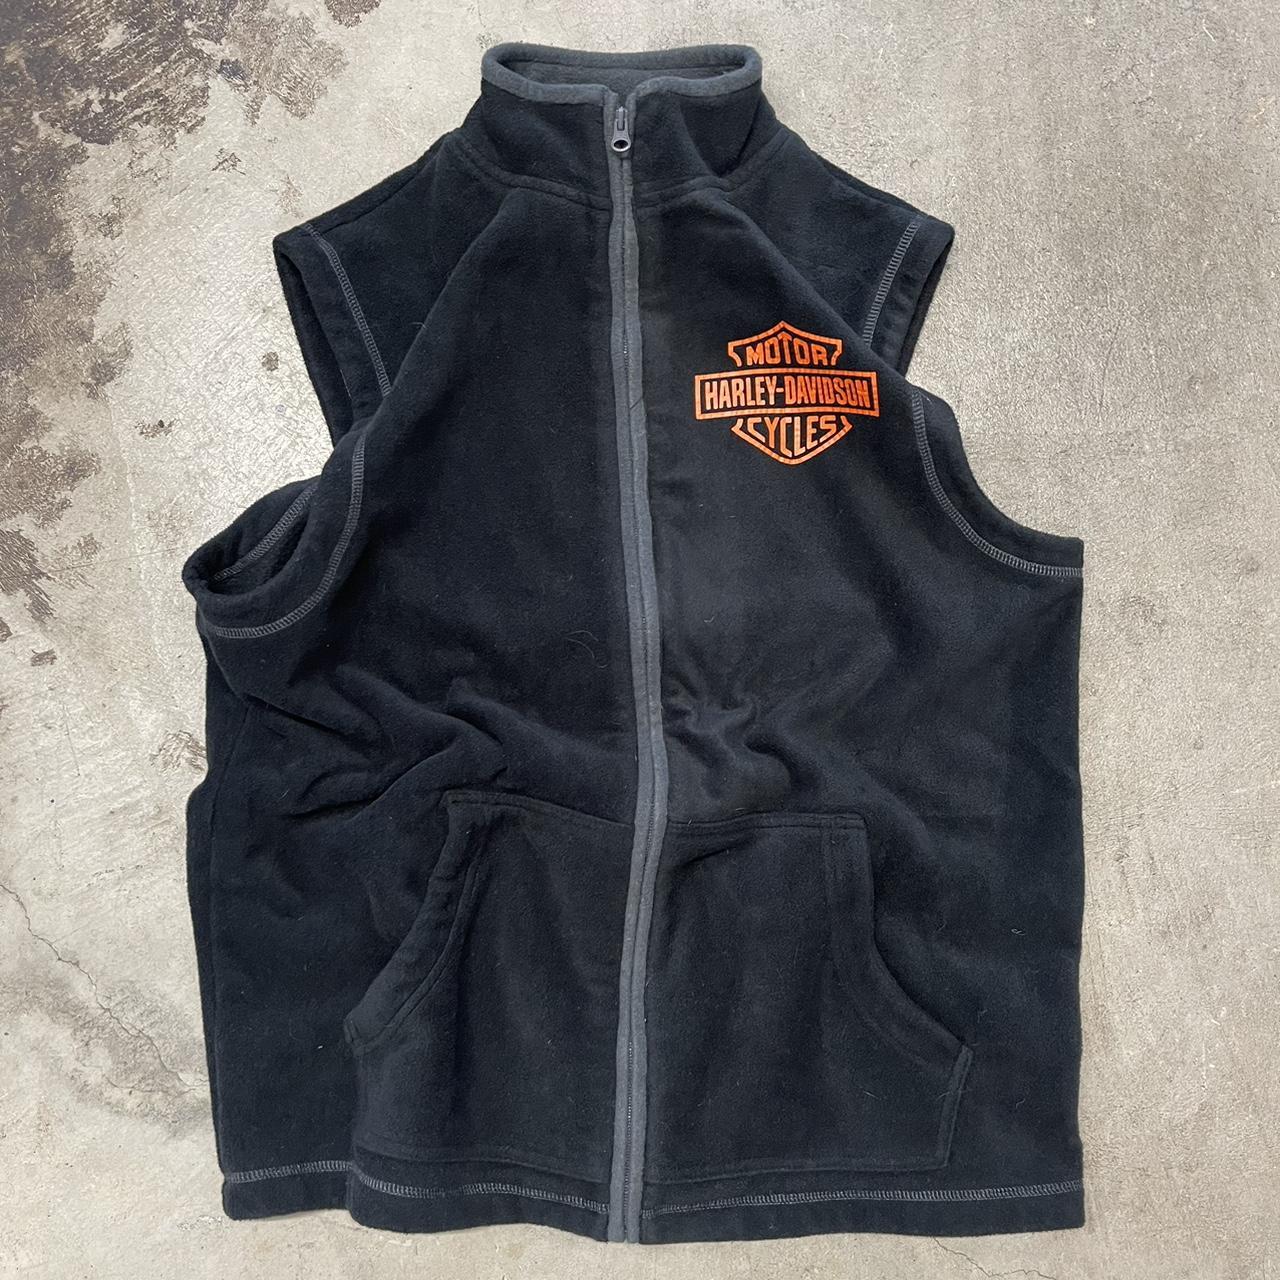 Vintage Harley Davidson Fleece Vest 22”x27.5” Flaws,... - Depop